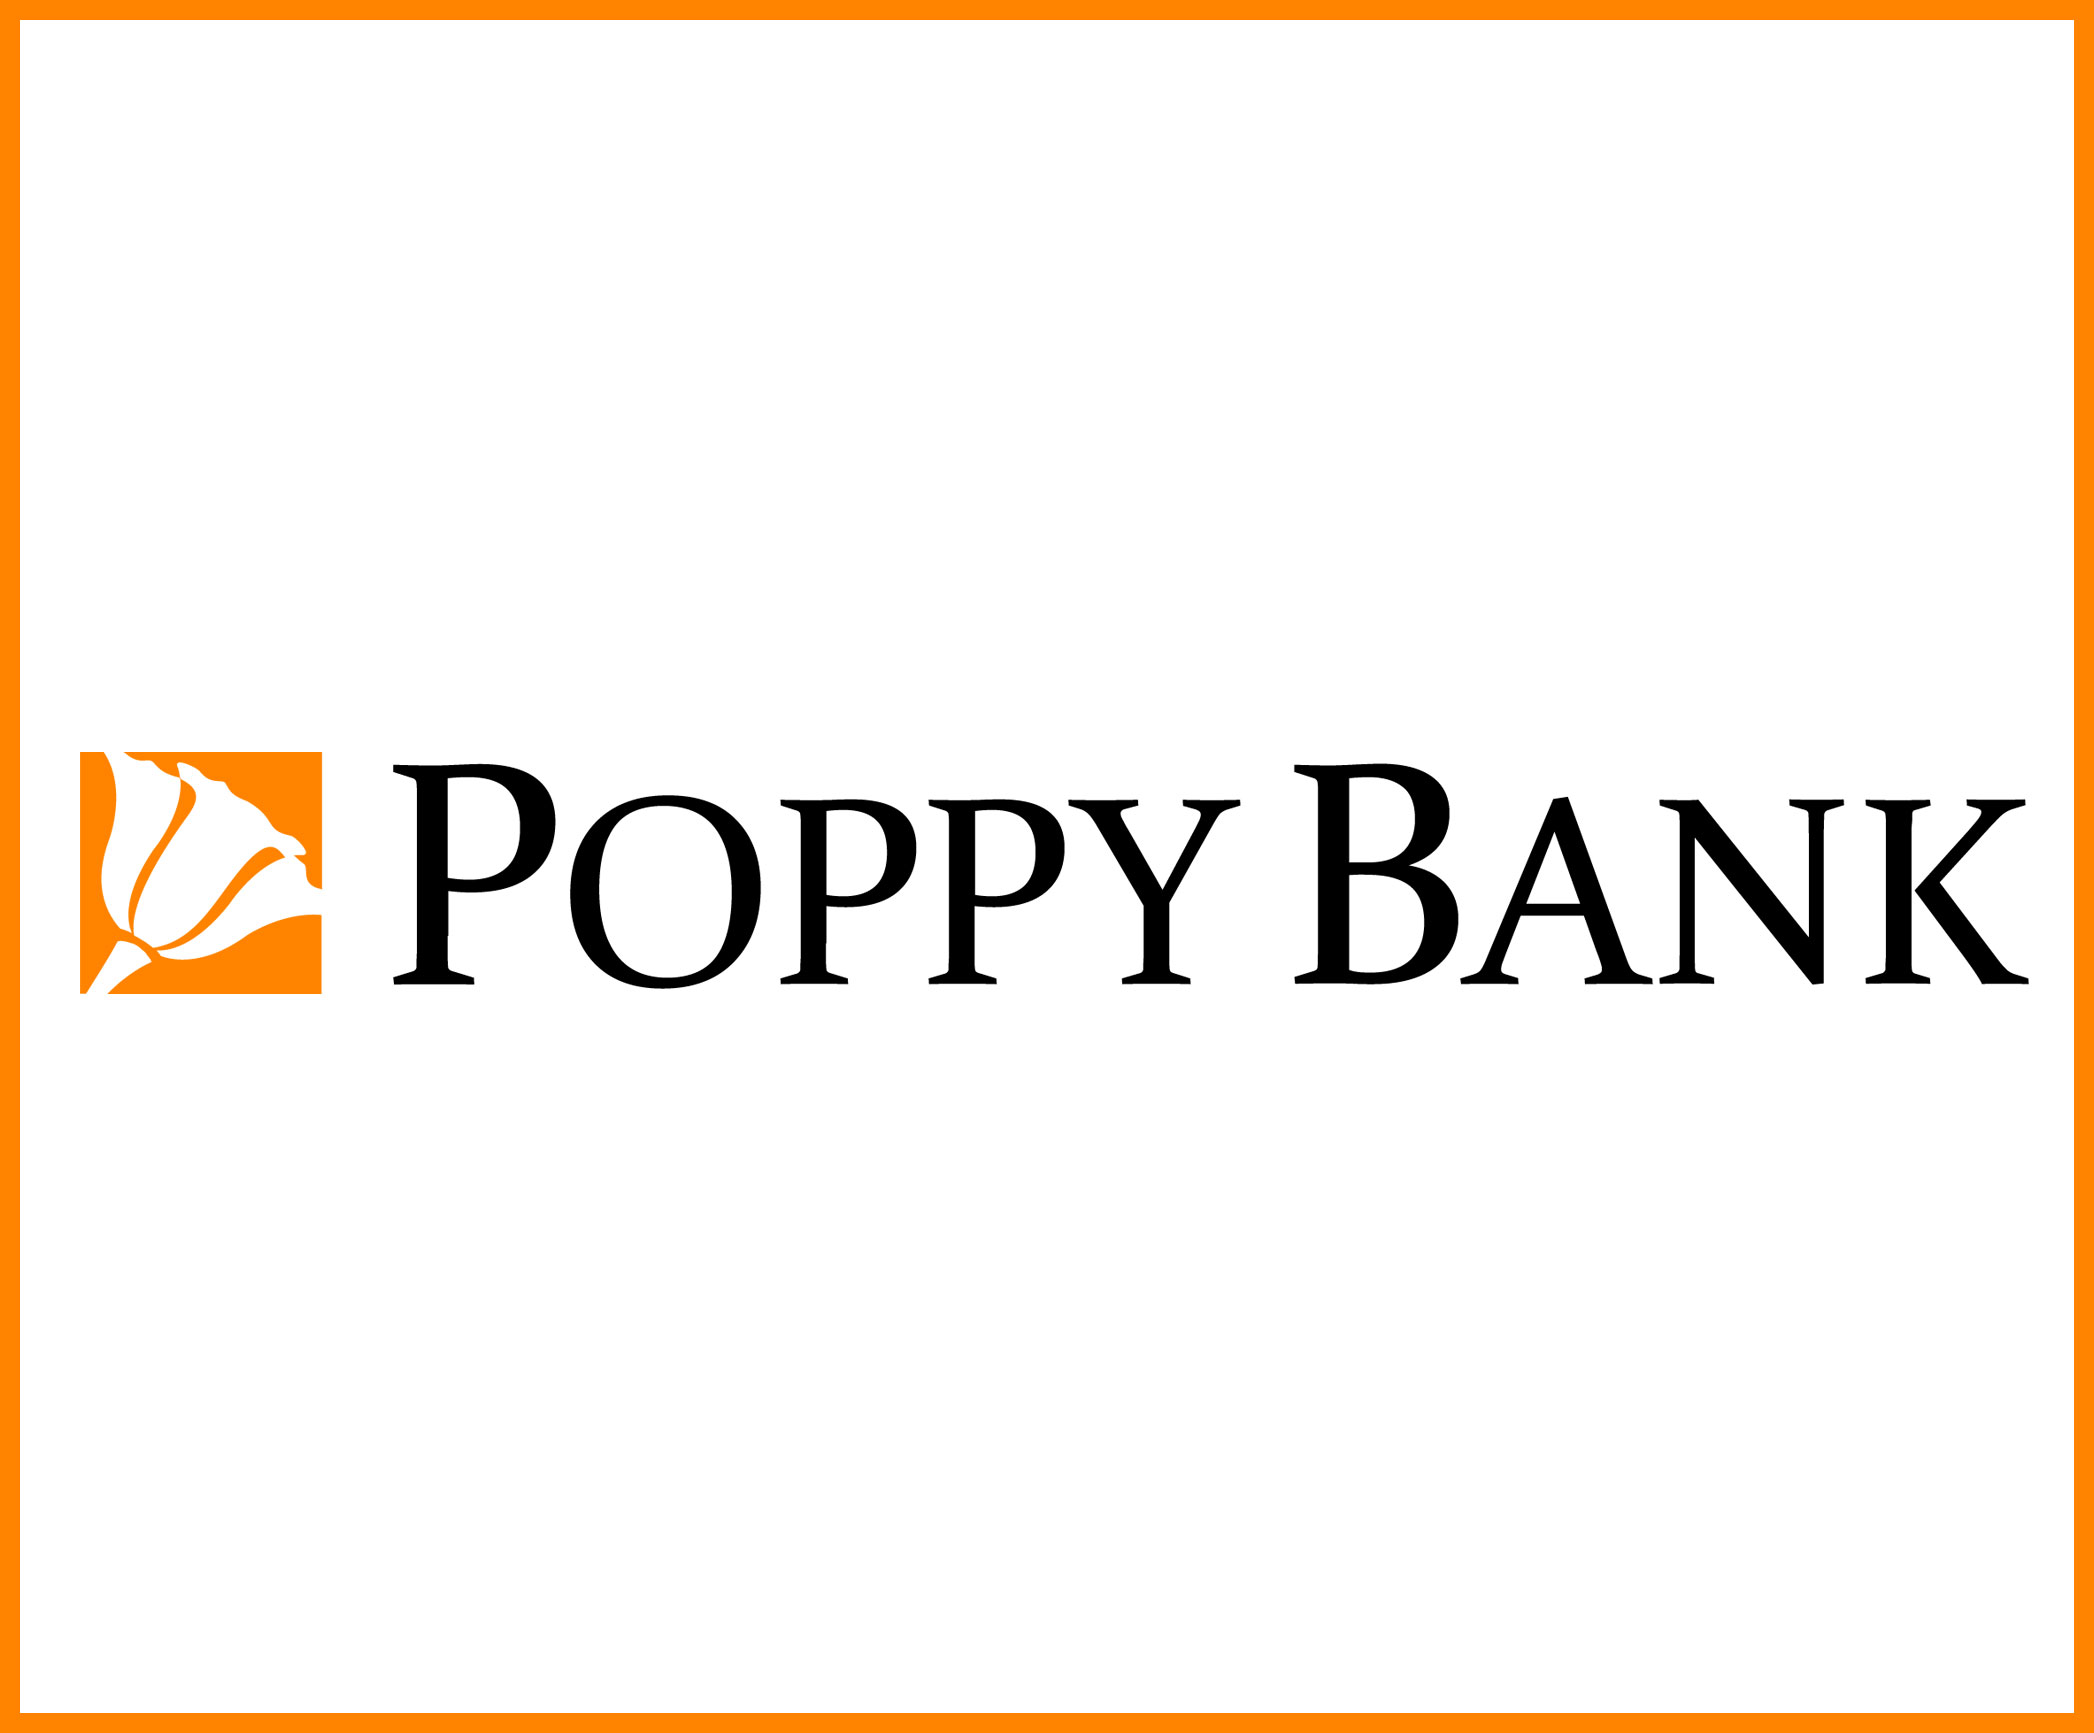 Wednesday Night Market Sponsor - Poppy Bank